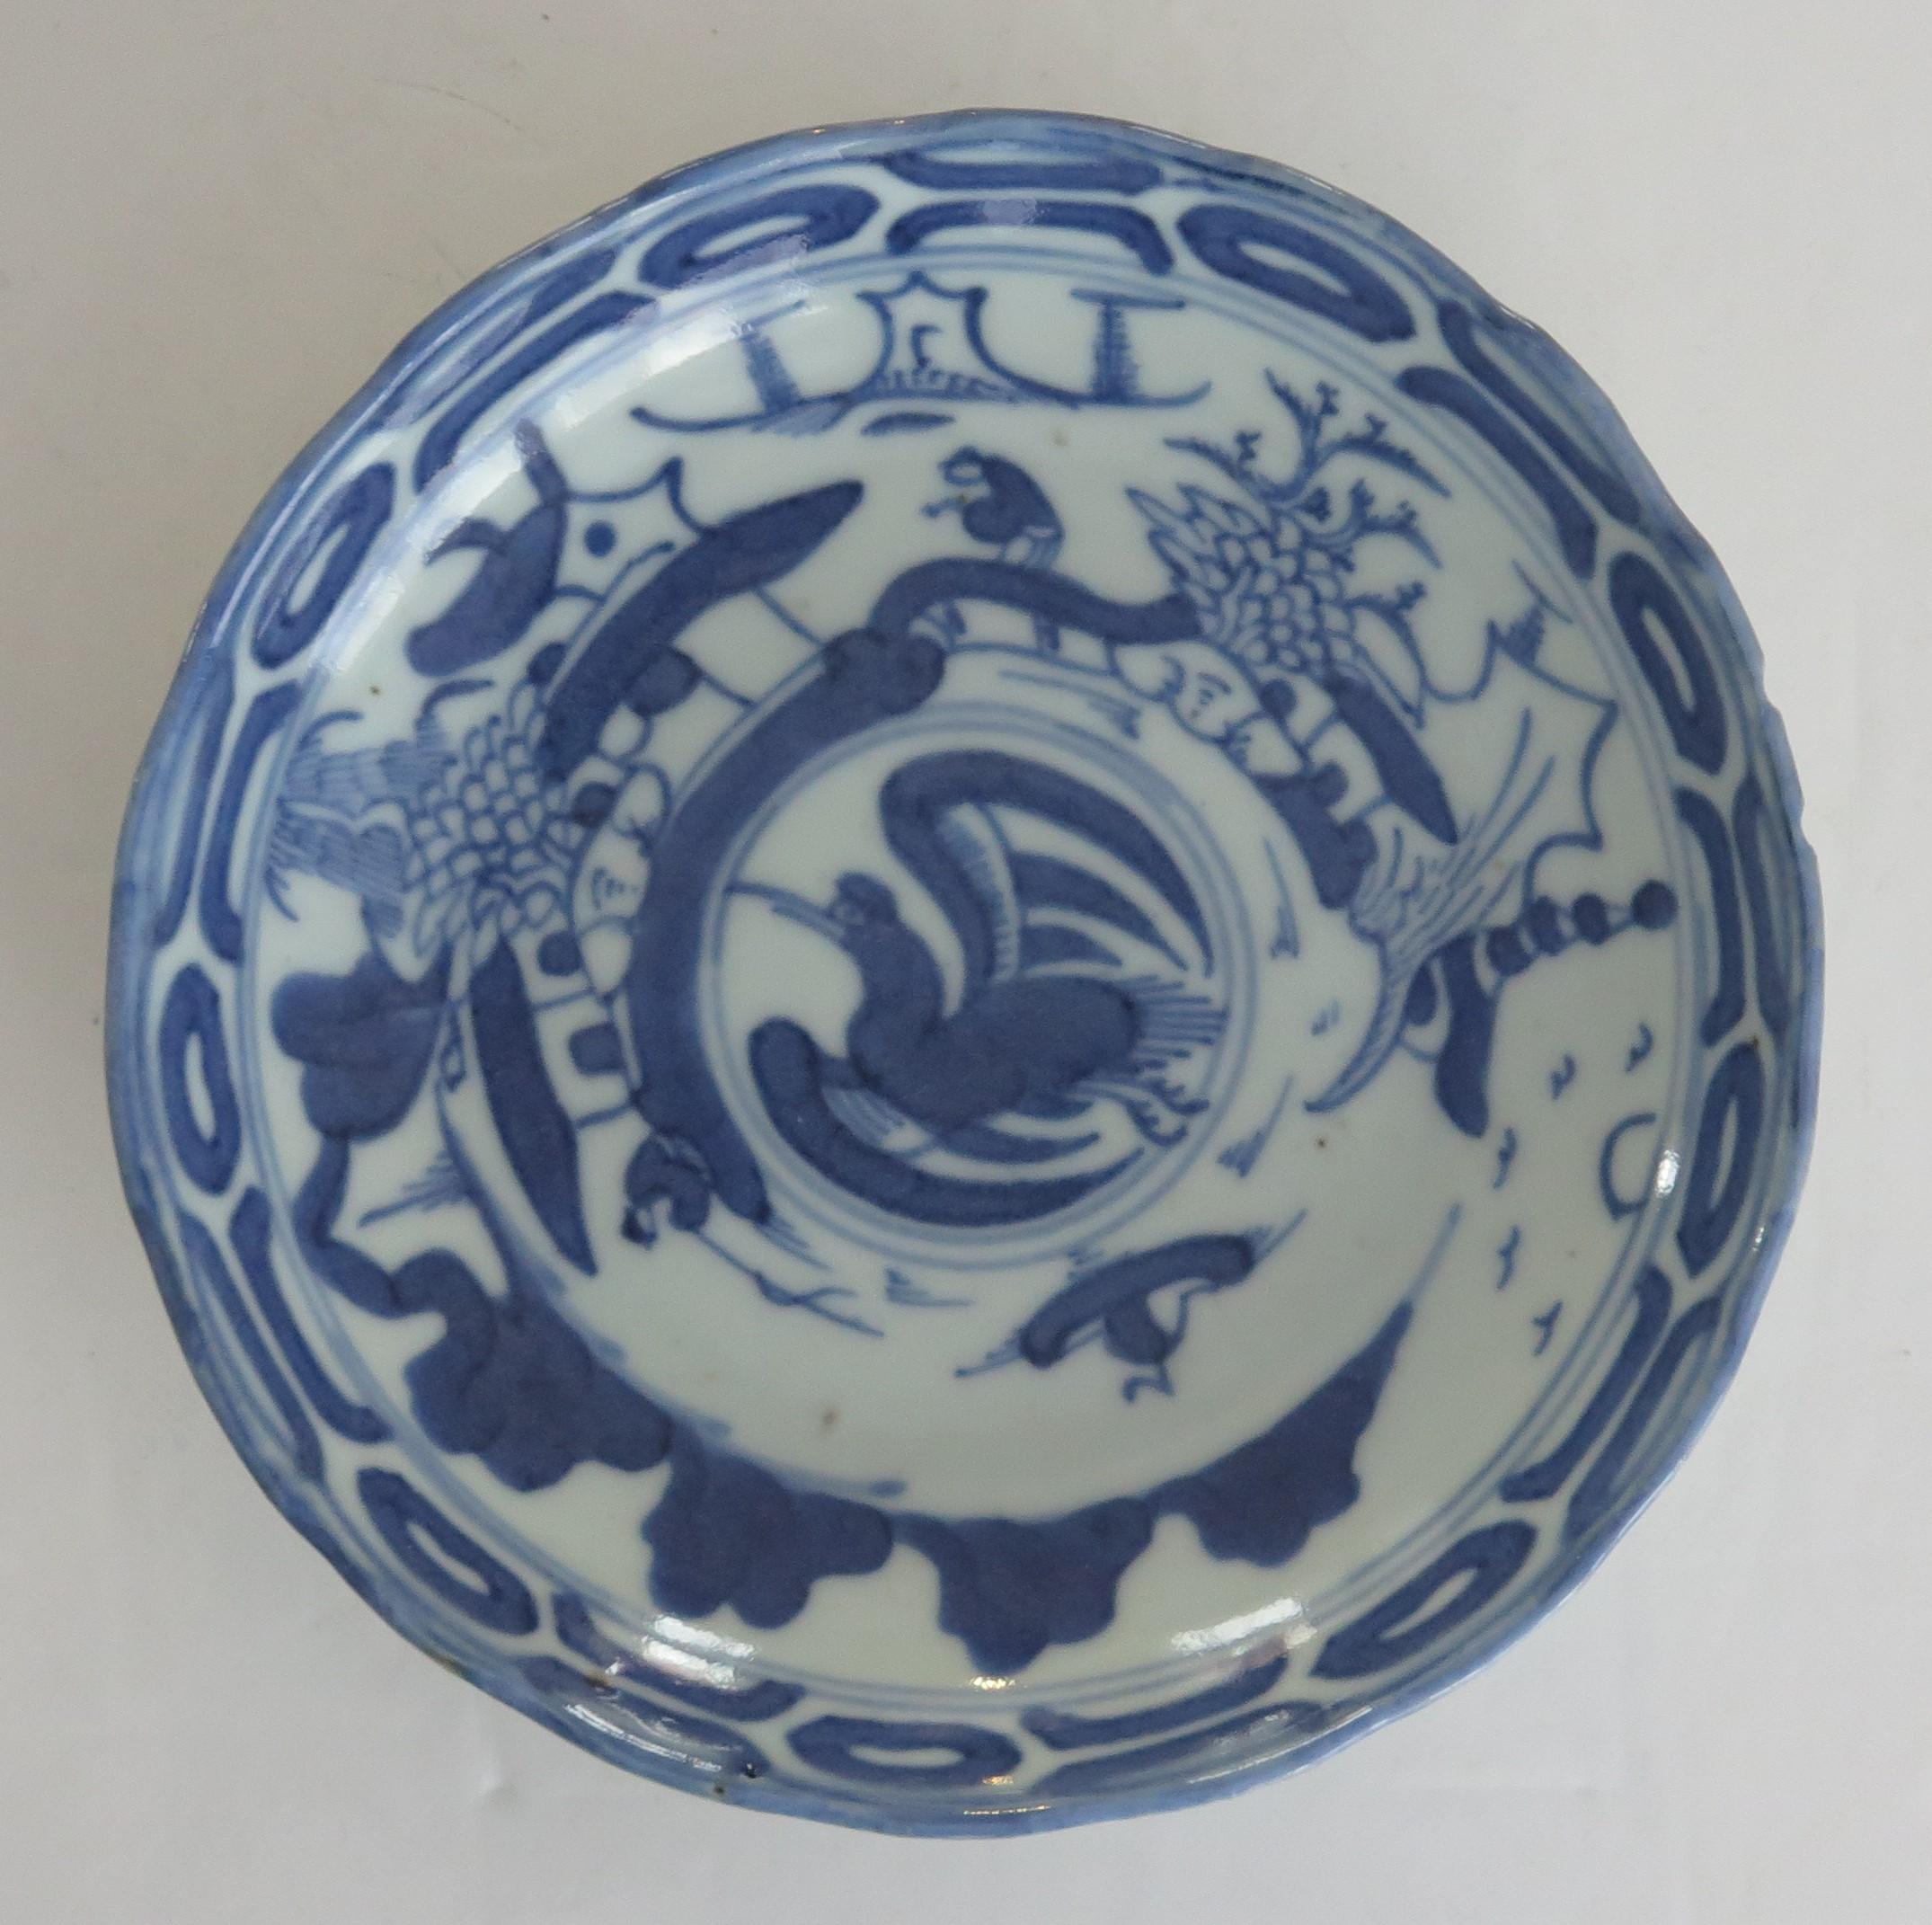 Il s'agit d'un plat en porcelaine d'exportation chinoise peint à la main, que nous datons du 17ème siècle, dynastie Ming, Tianqi ou Chongzhen c.1620-1640

Le plat est en pot assez épais, avec un pied assez haut, légèrement en retrait, et un bord